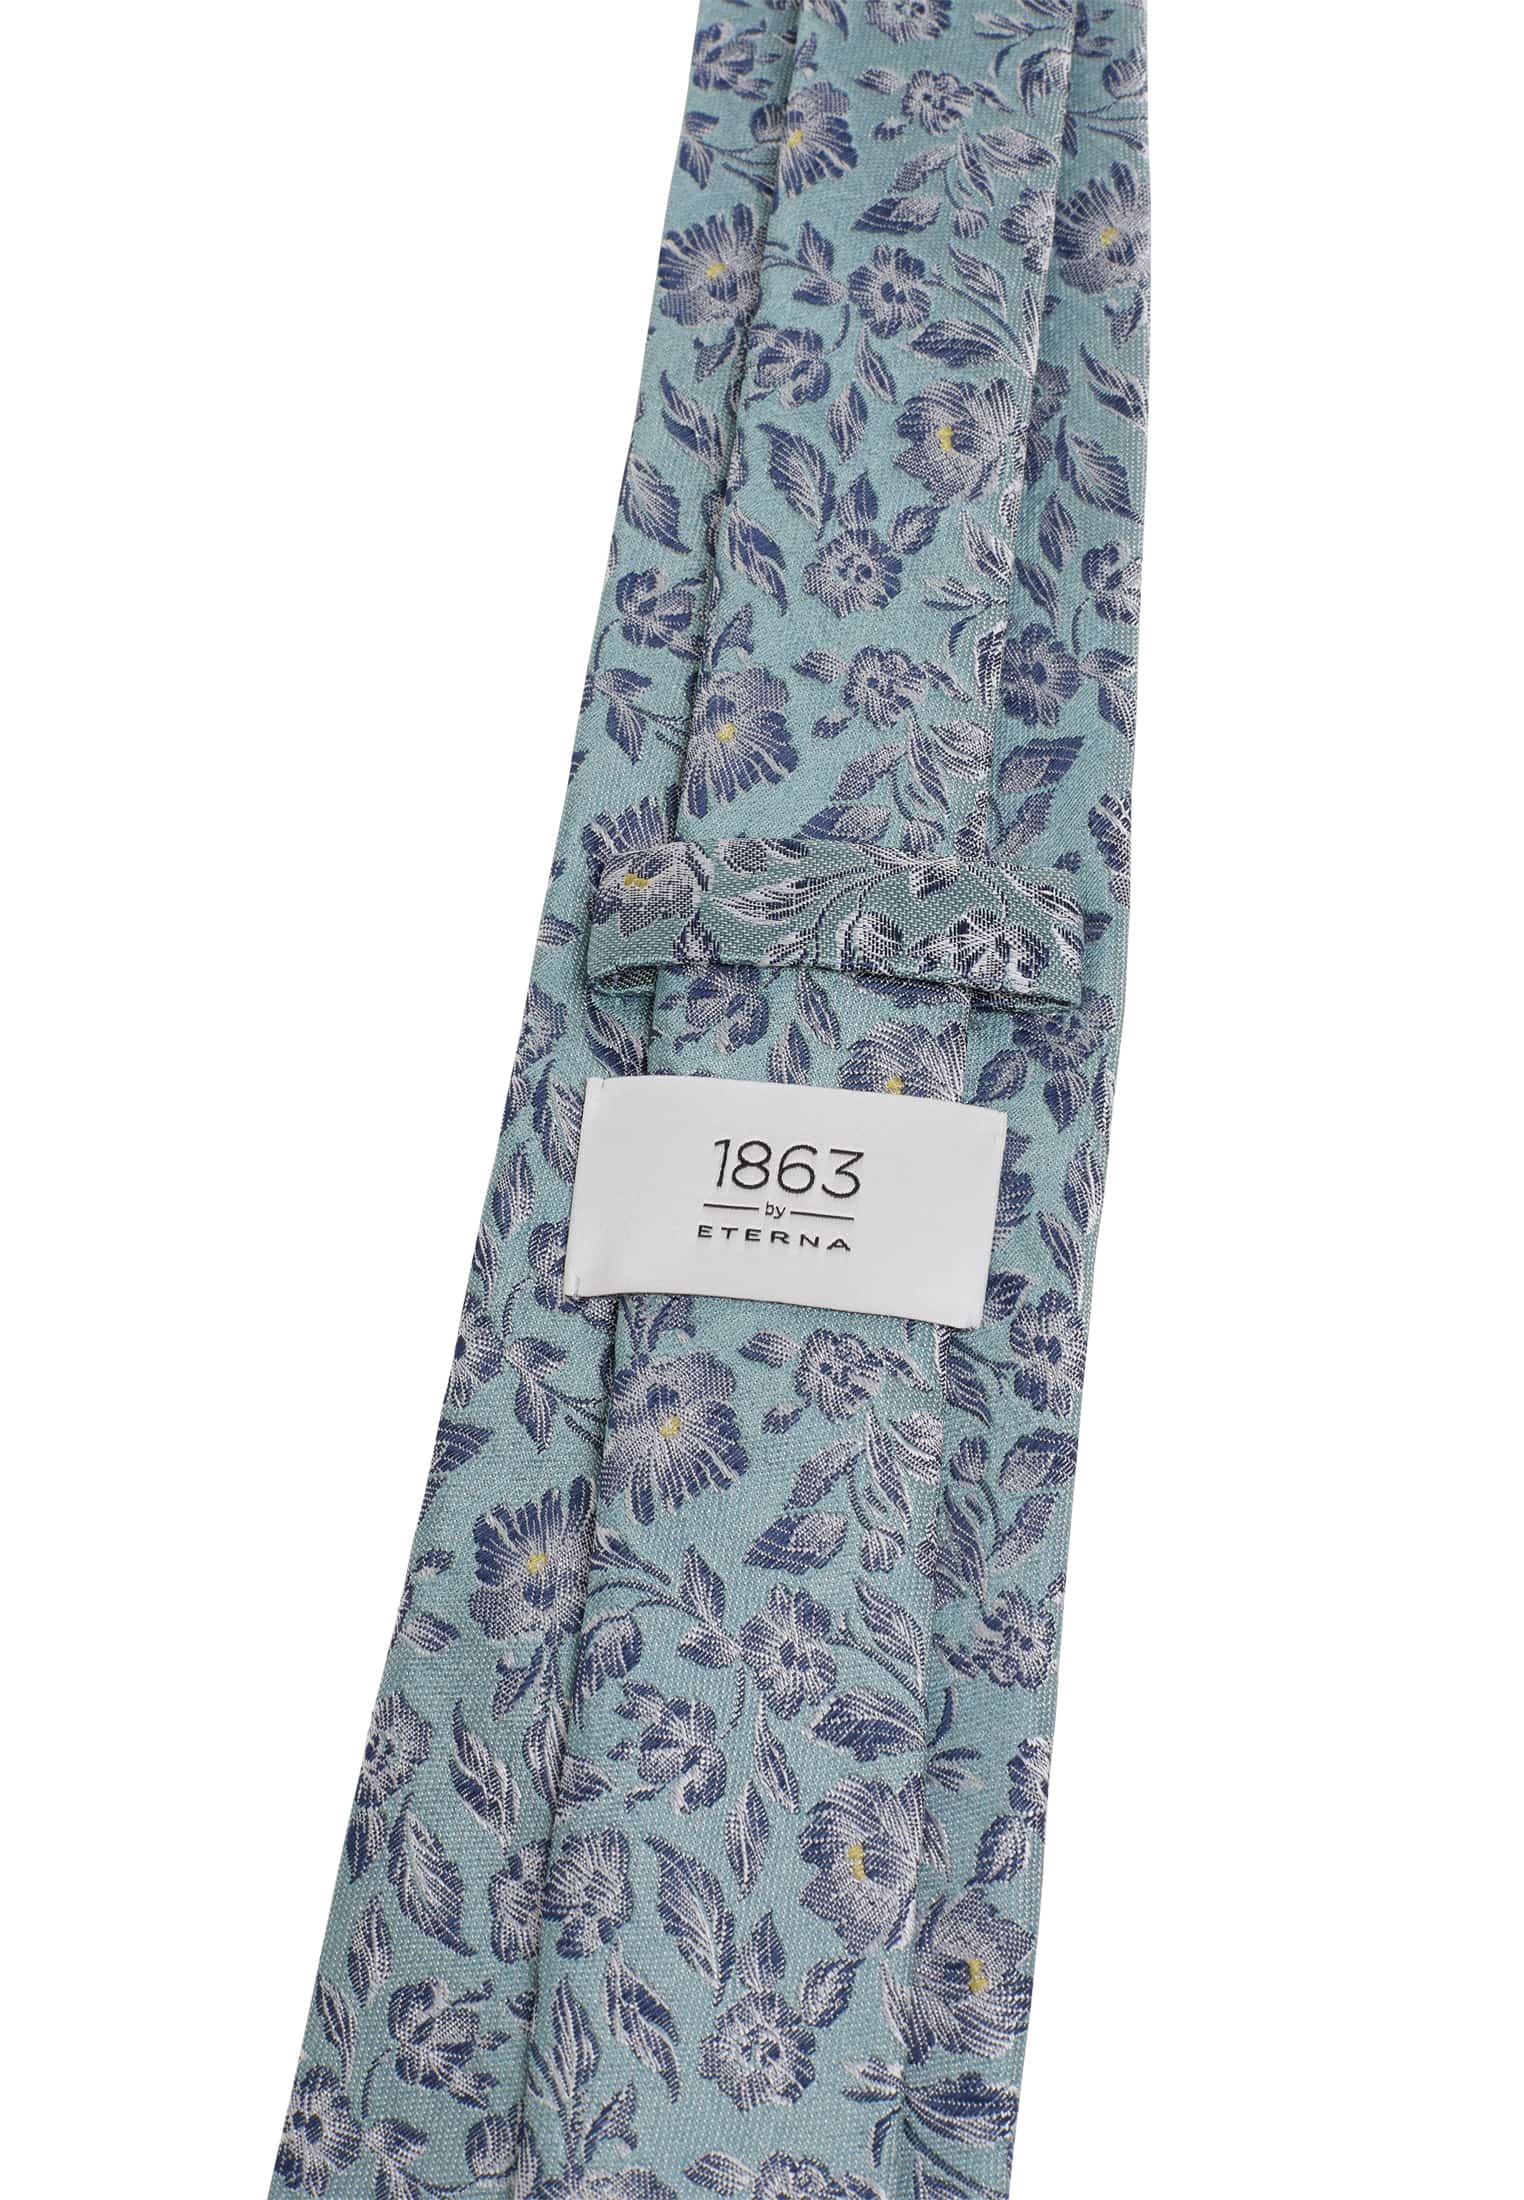 Cravate bleu/bleu marine estampé